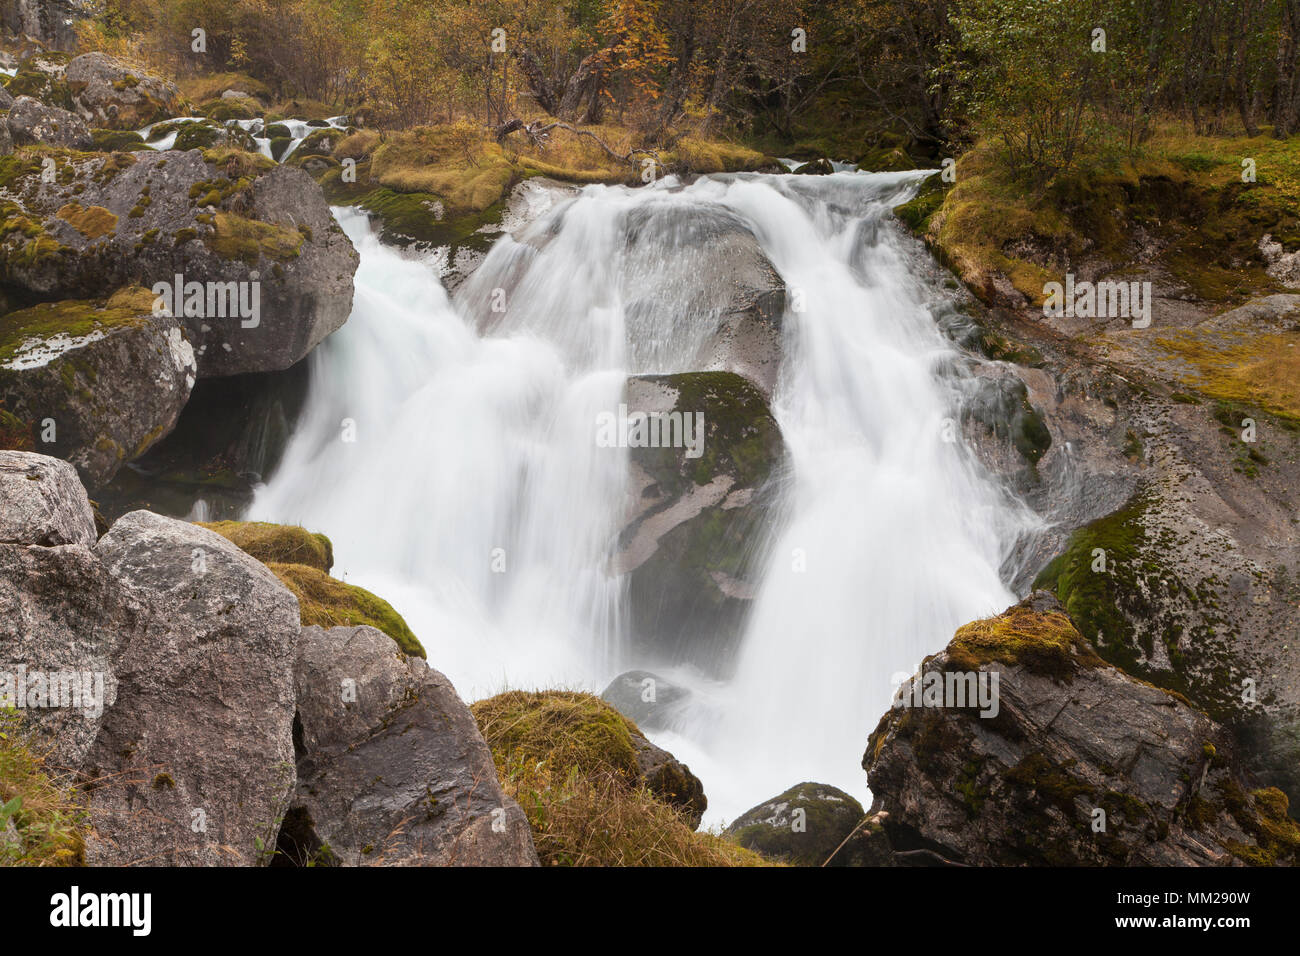 Una piccola cascata sul fiume Briksdalselva, alimentata dalla fusione del Ghiacciaio Briksdal, Jostedalsbreen National Park, Sogn og Fjordane, Norvegia. Foto Stock